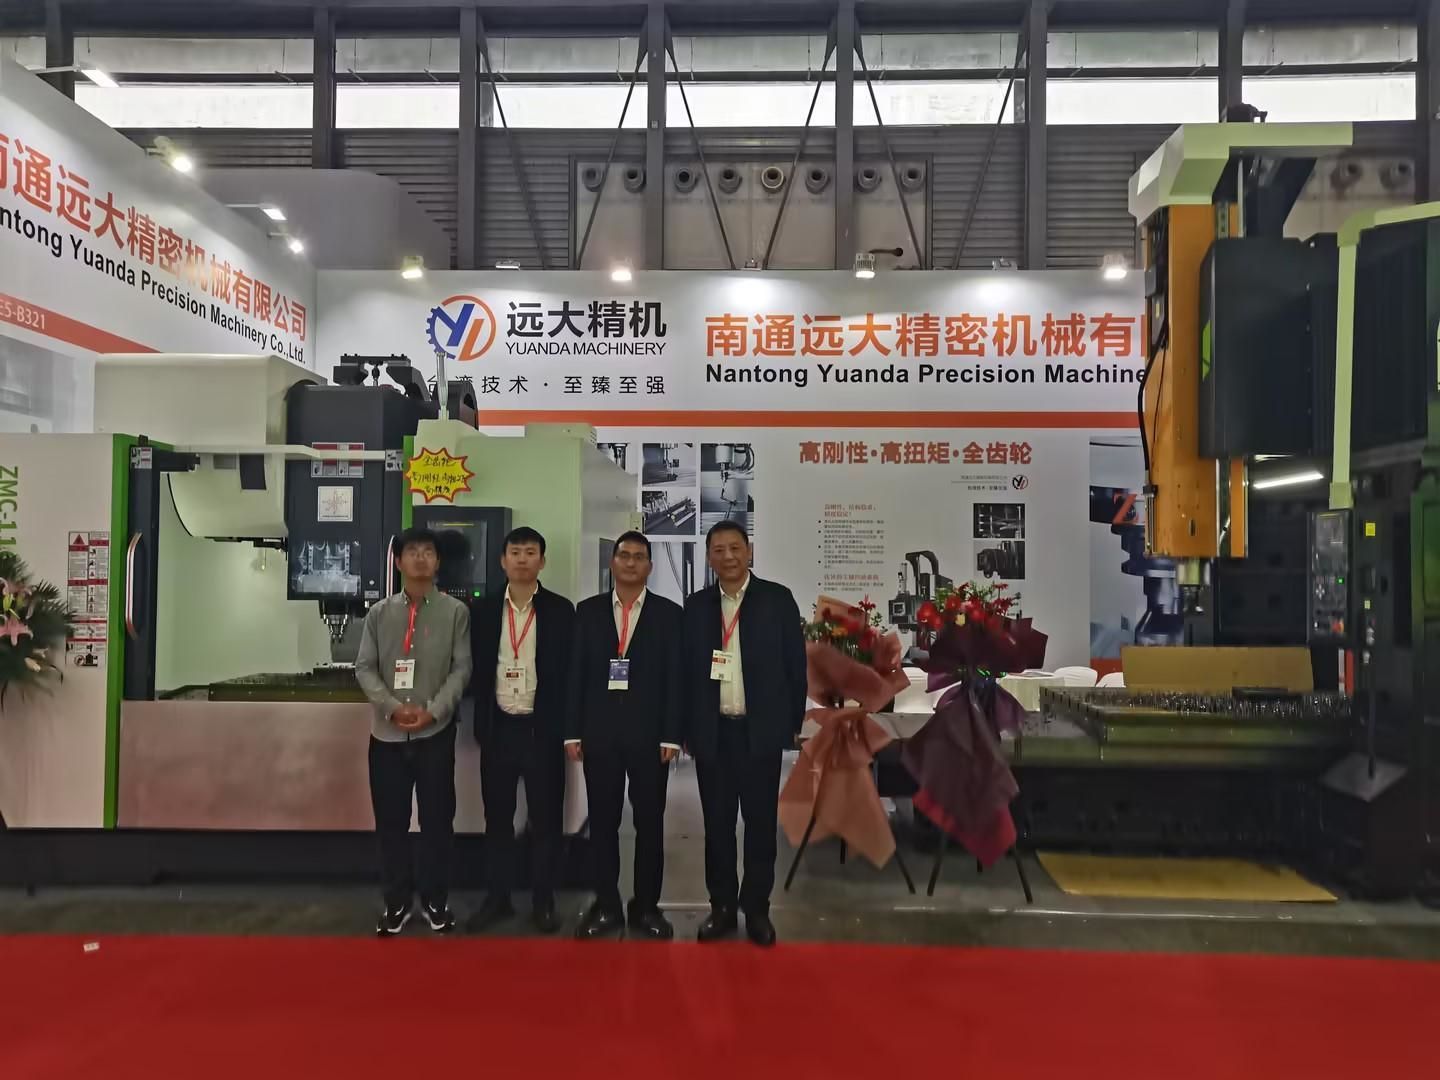 تور نمایشگاه ماشین ابزار CNC چین